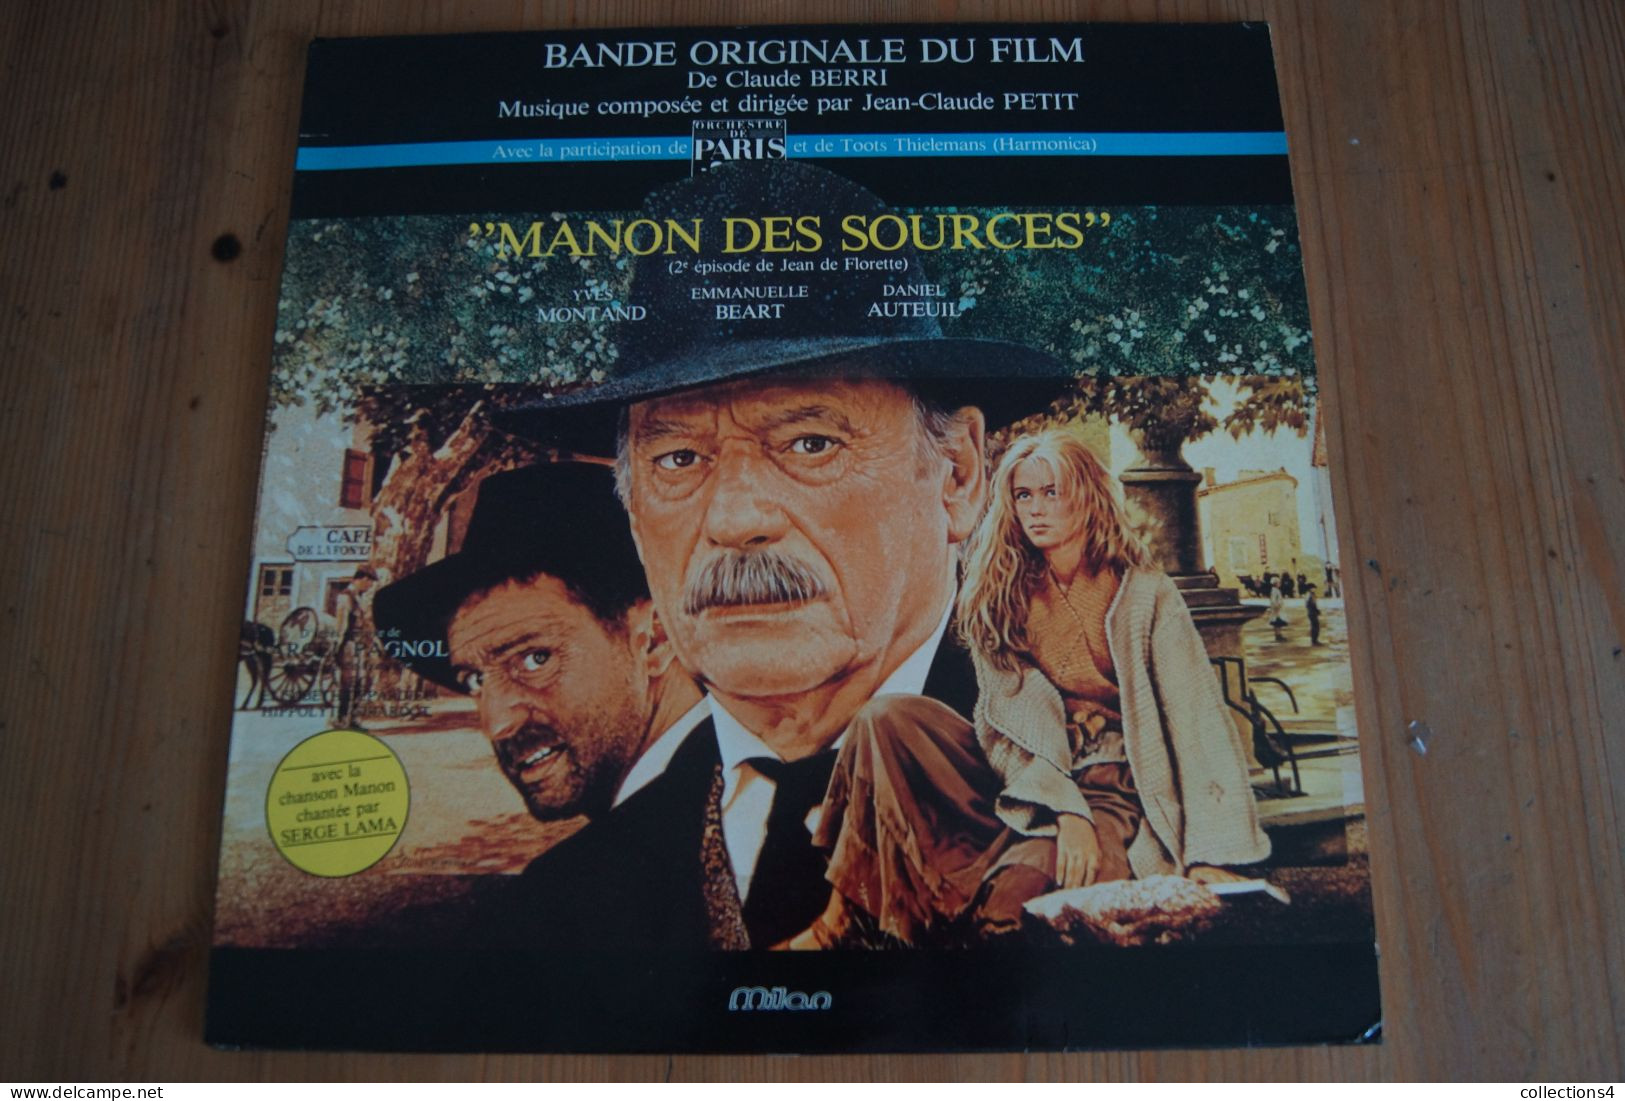 MANON DES SOURCES JEAN CLAUDE PETIT SERGE LAMA MARCEL PAGNOL EMMANUELLE BEART MONTAND DANIEL AUTEUIL LP DU FILM 1986 - Musique De Films